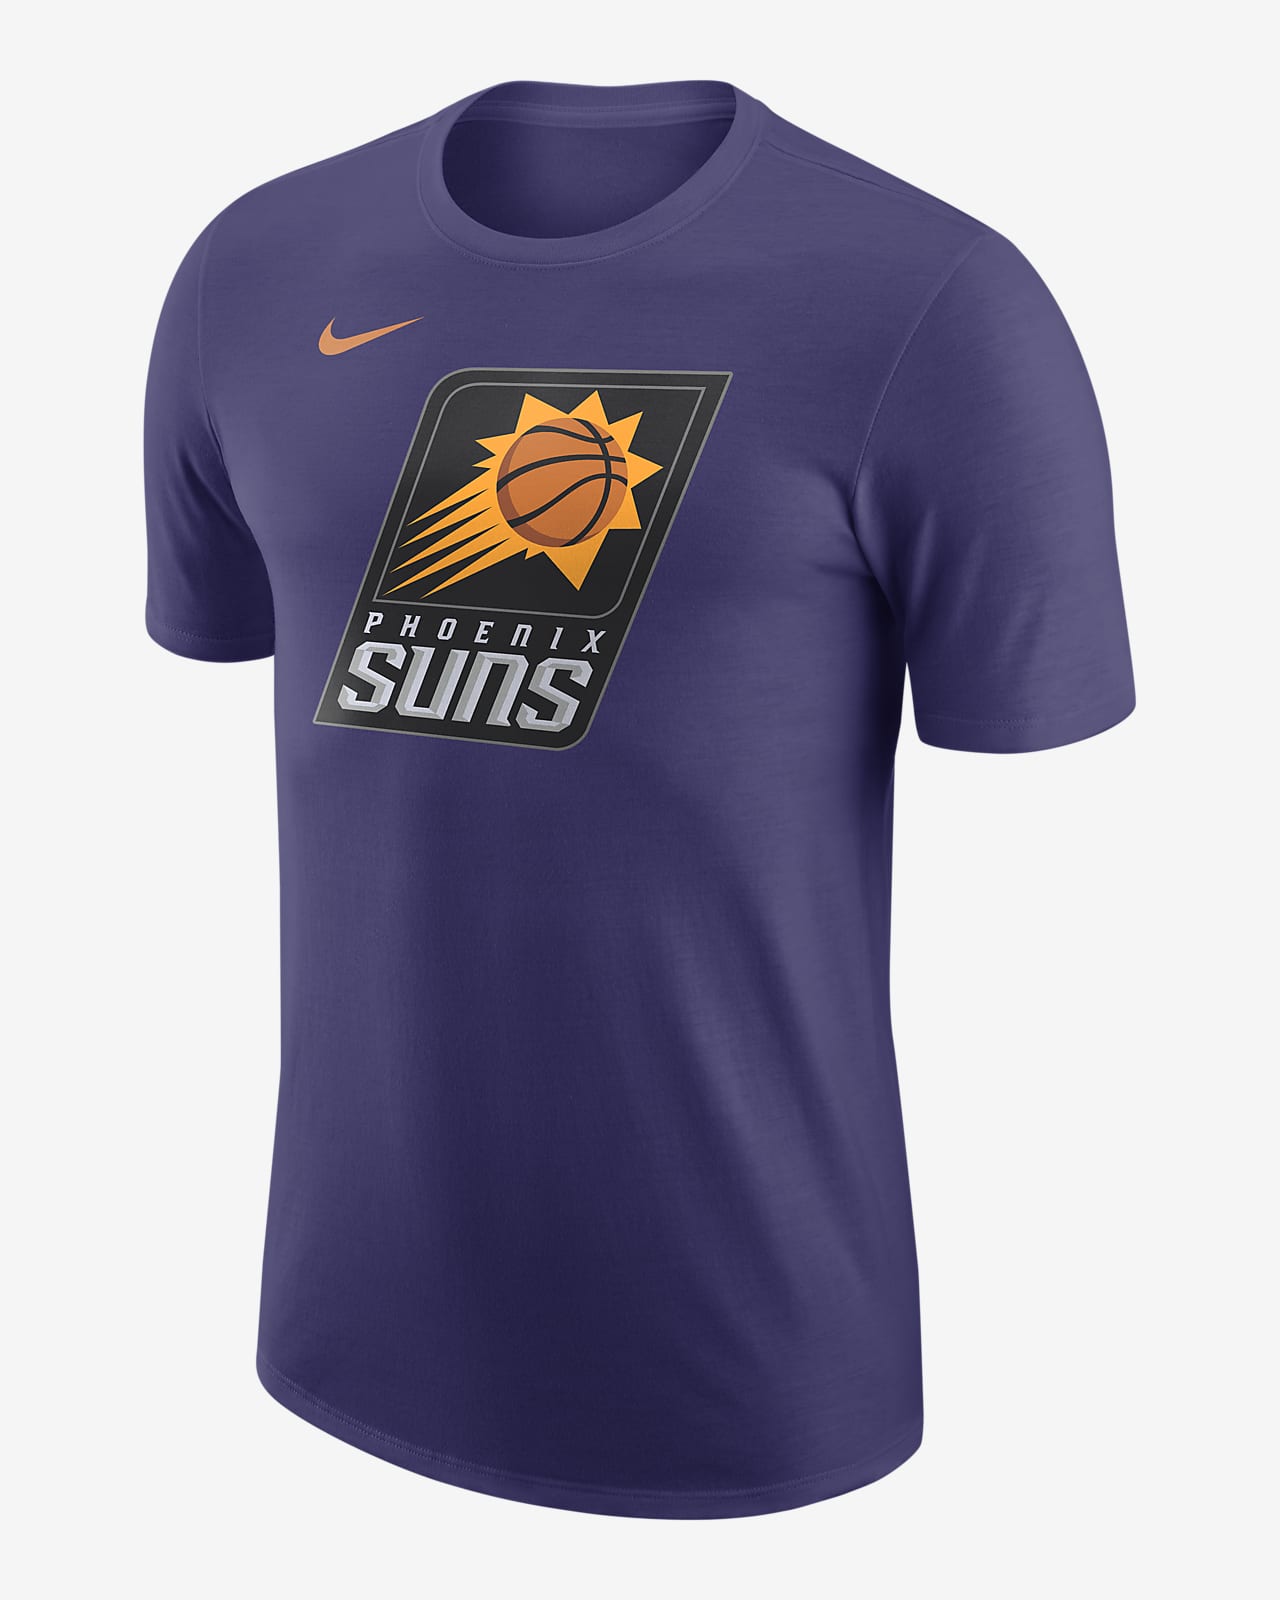 Ανδρικό T-Shirt Nike NBA Φοίνιξ Σανς Essential